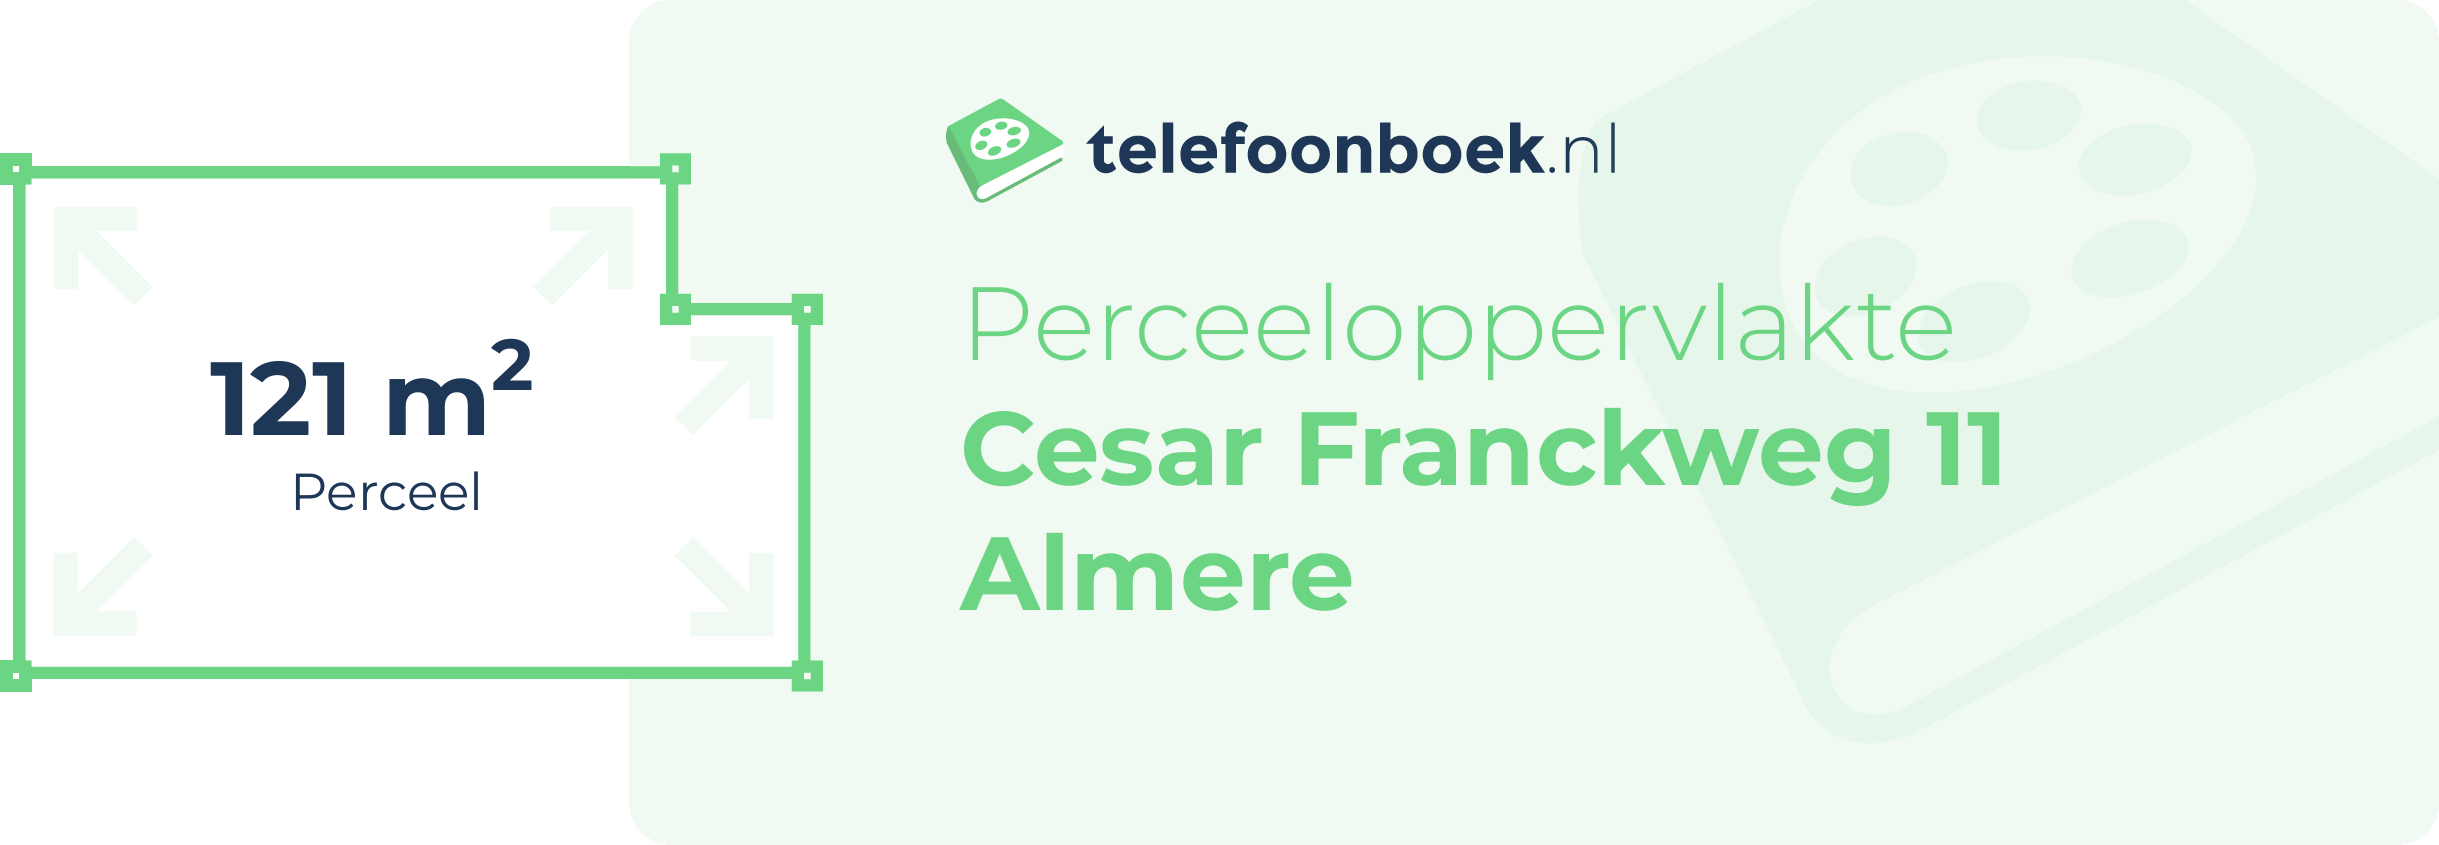 Perceeloppervlakte Cesar Franckweg 11 Almere